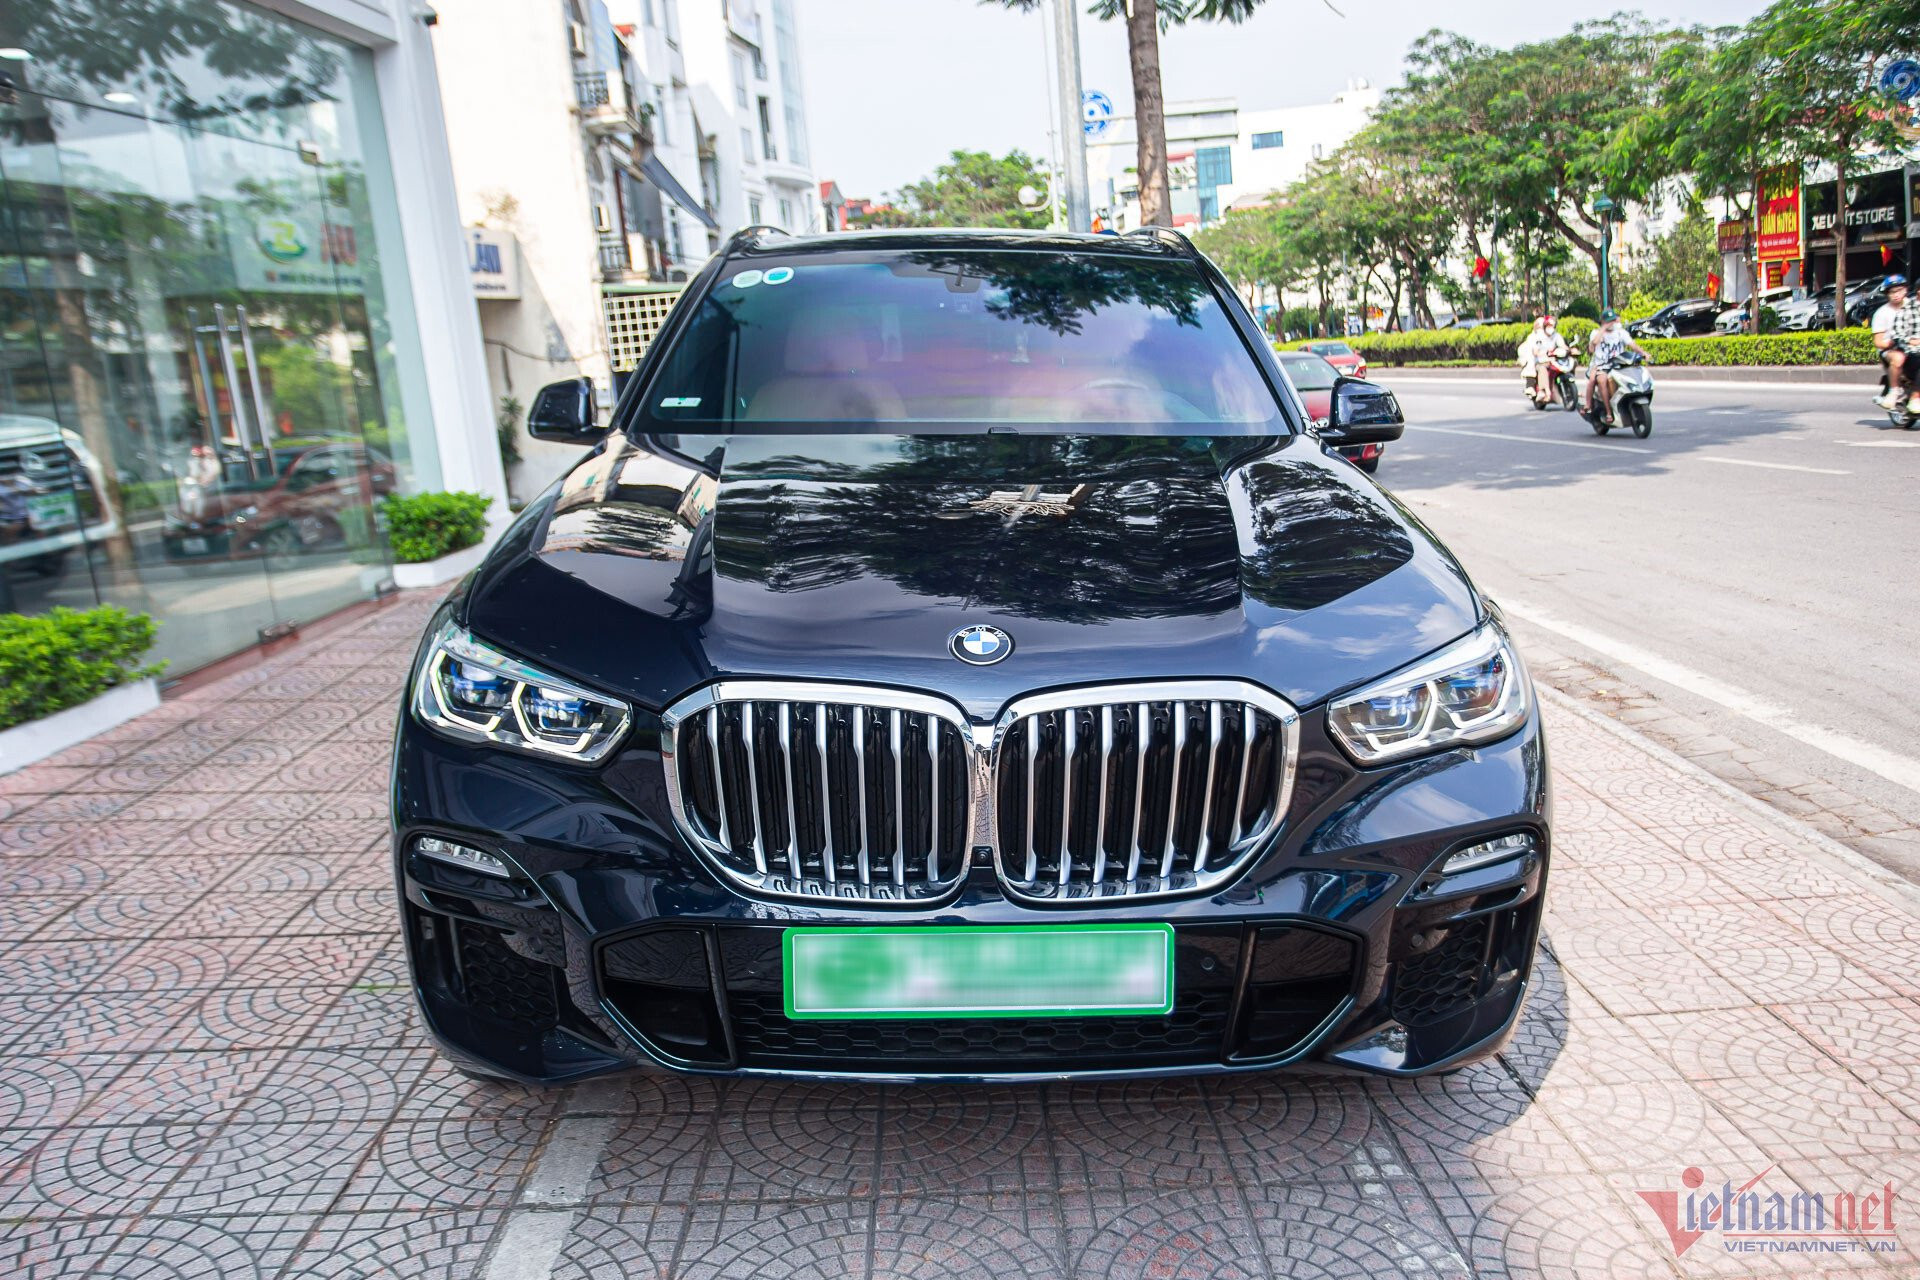 BMW X5 đời 2020 mới lăn bánh 100 km, chủ xe bán lỗ hơn 1 tỷ đồng - 3